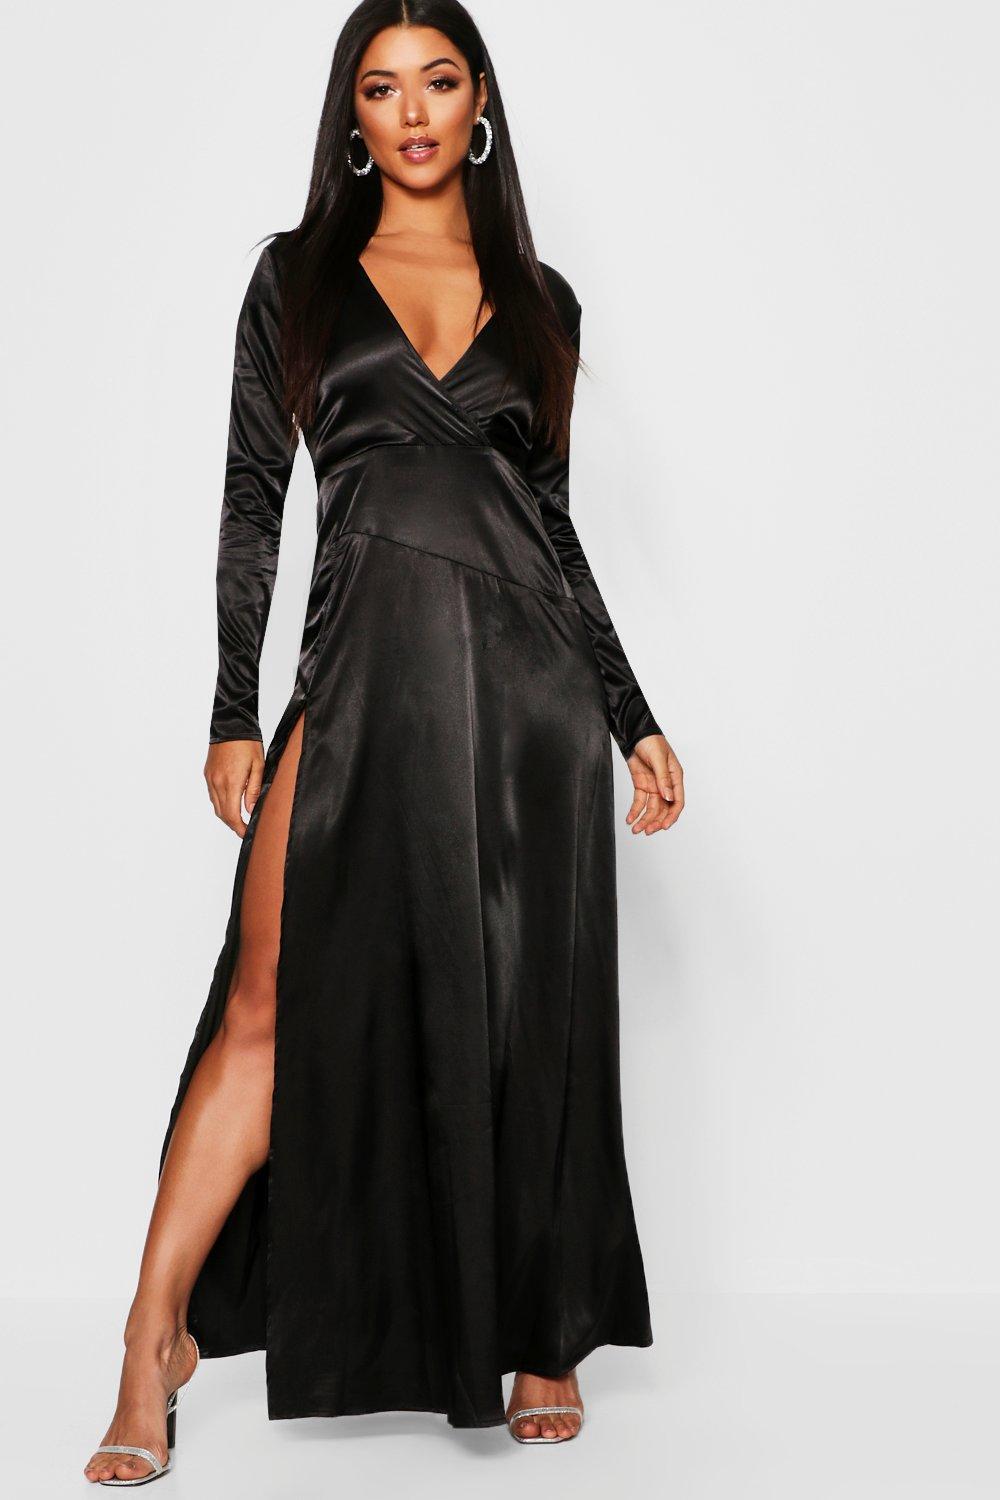 black satin mini dress long sleeve